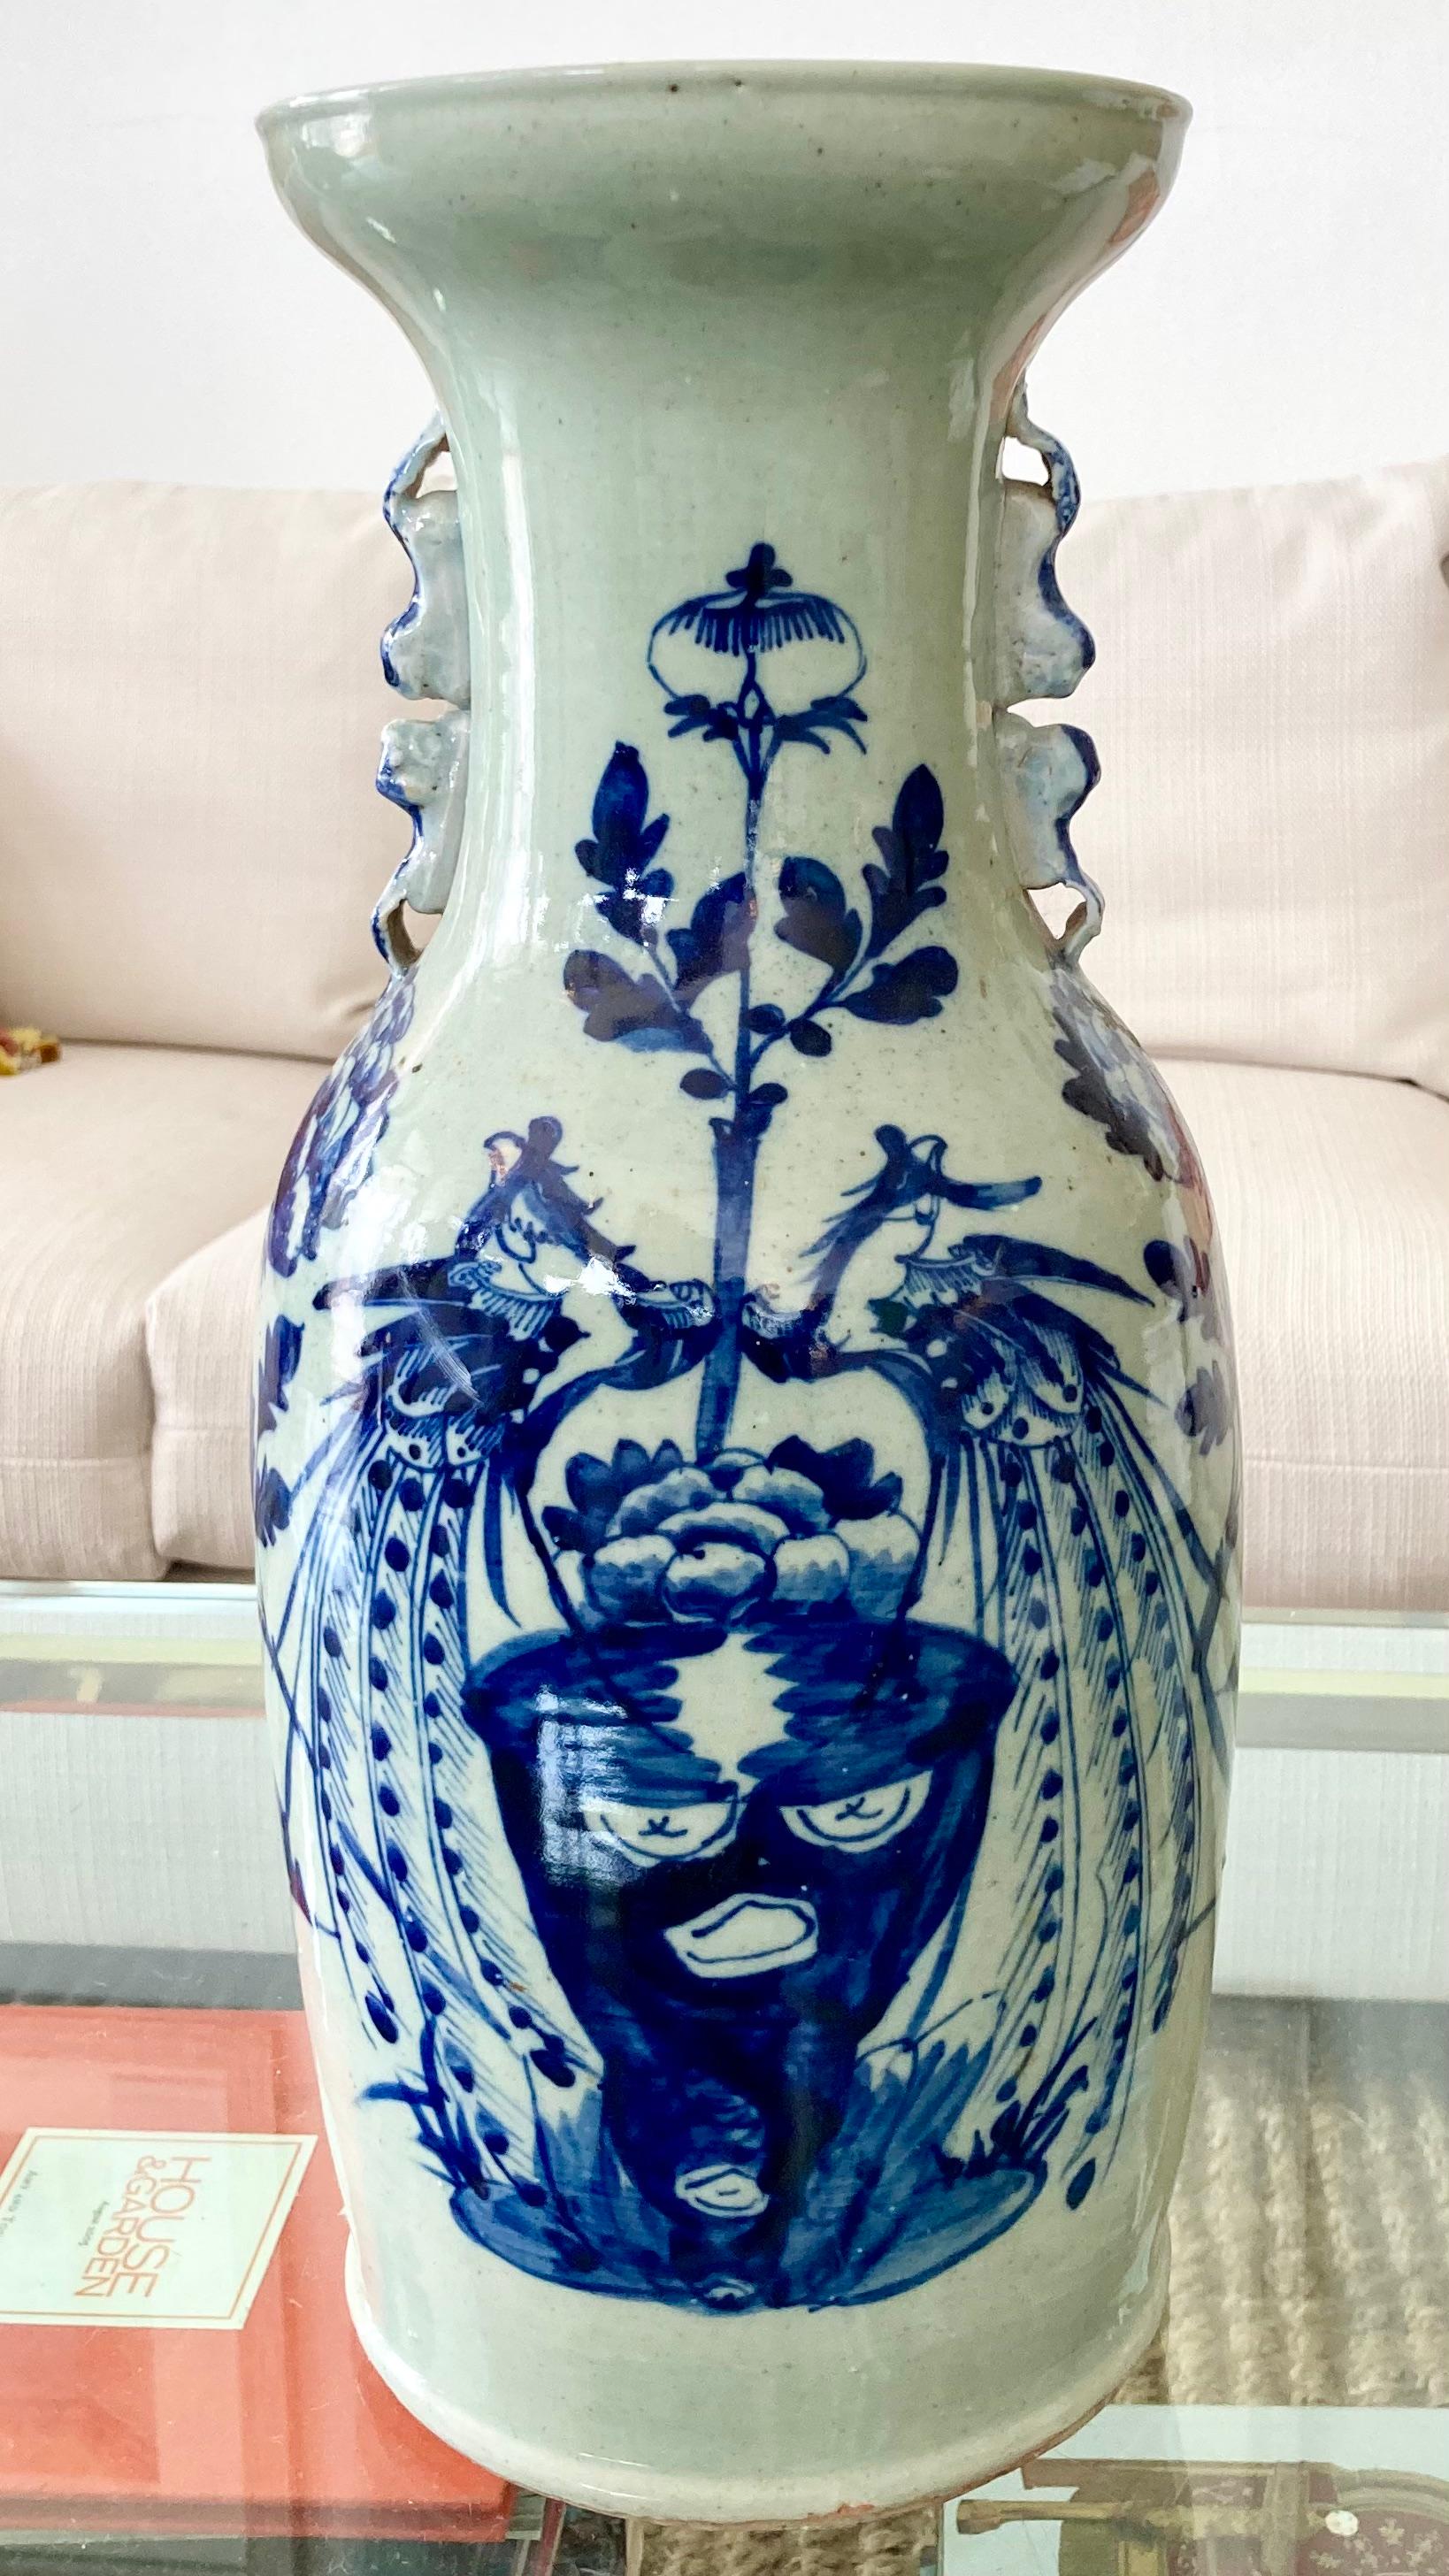 Magnifique vase asiatique en céramique bleu et blanc ( teinte vert céladon). Un complément idéal pour vos intérieurs et vos plateaux de table. Pas de cachet à la base. Des combinaisons de formes, de motifs et de couleurs très élégantes.